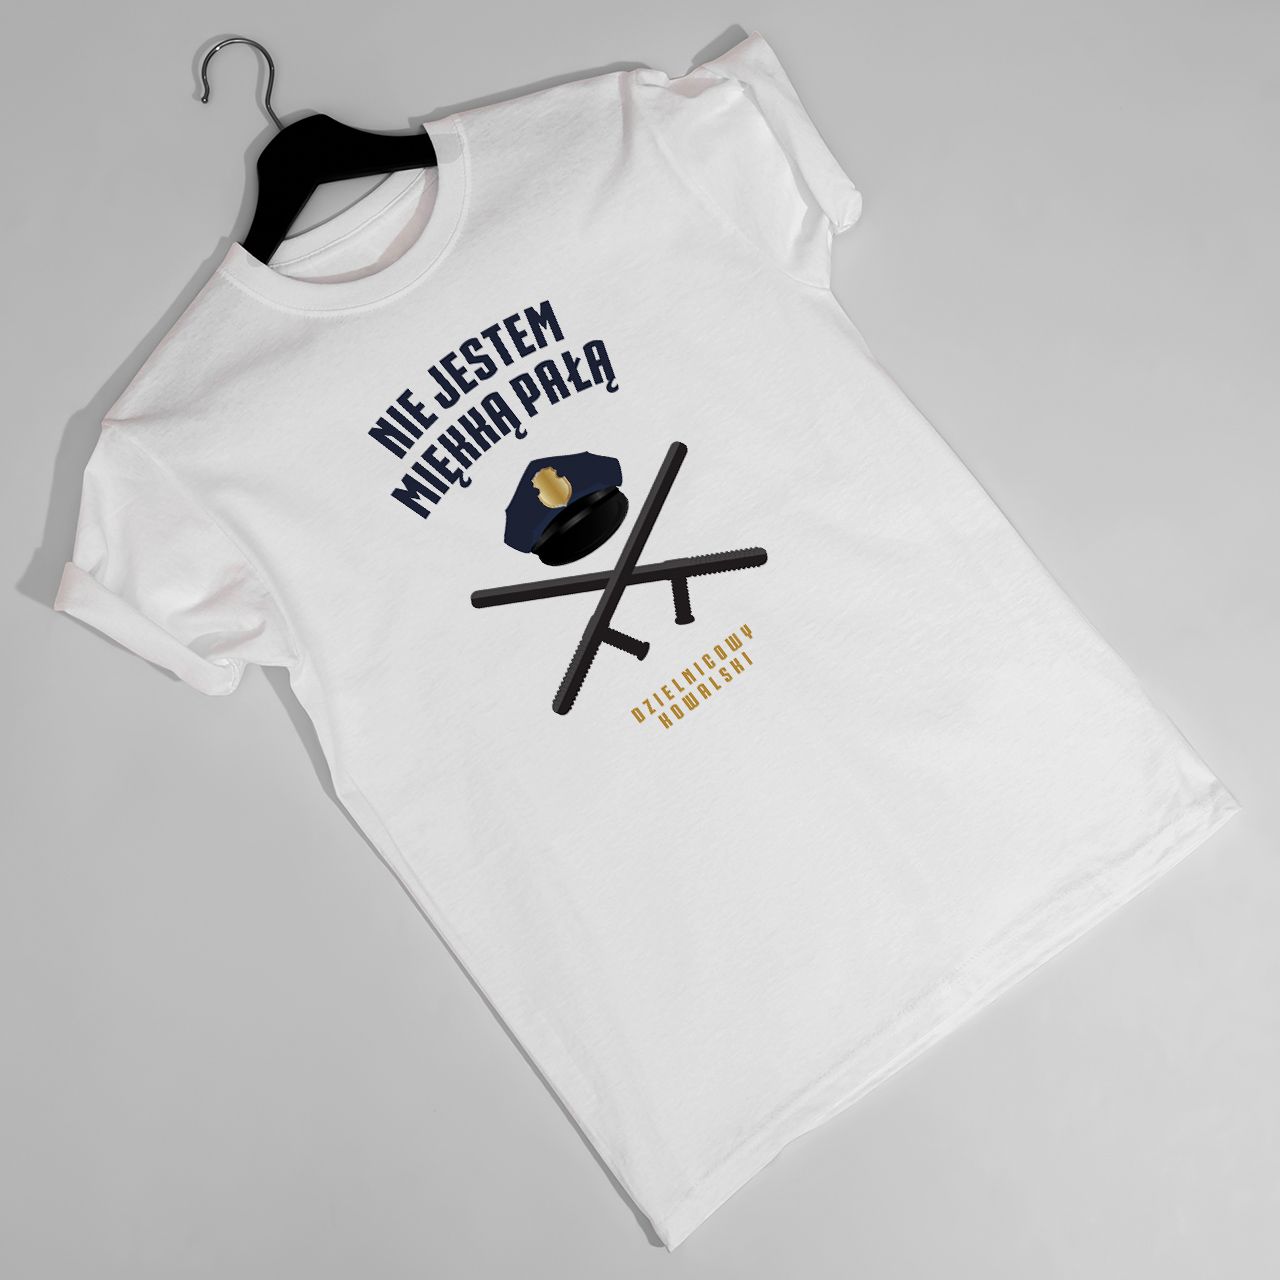 Koszulka męska z nadrukiem MIĘKKA PAŁA śmieszny prezent dla policjanta - S